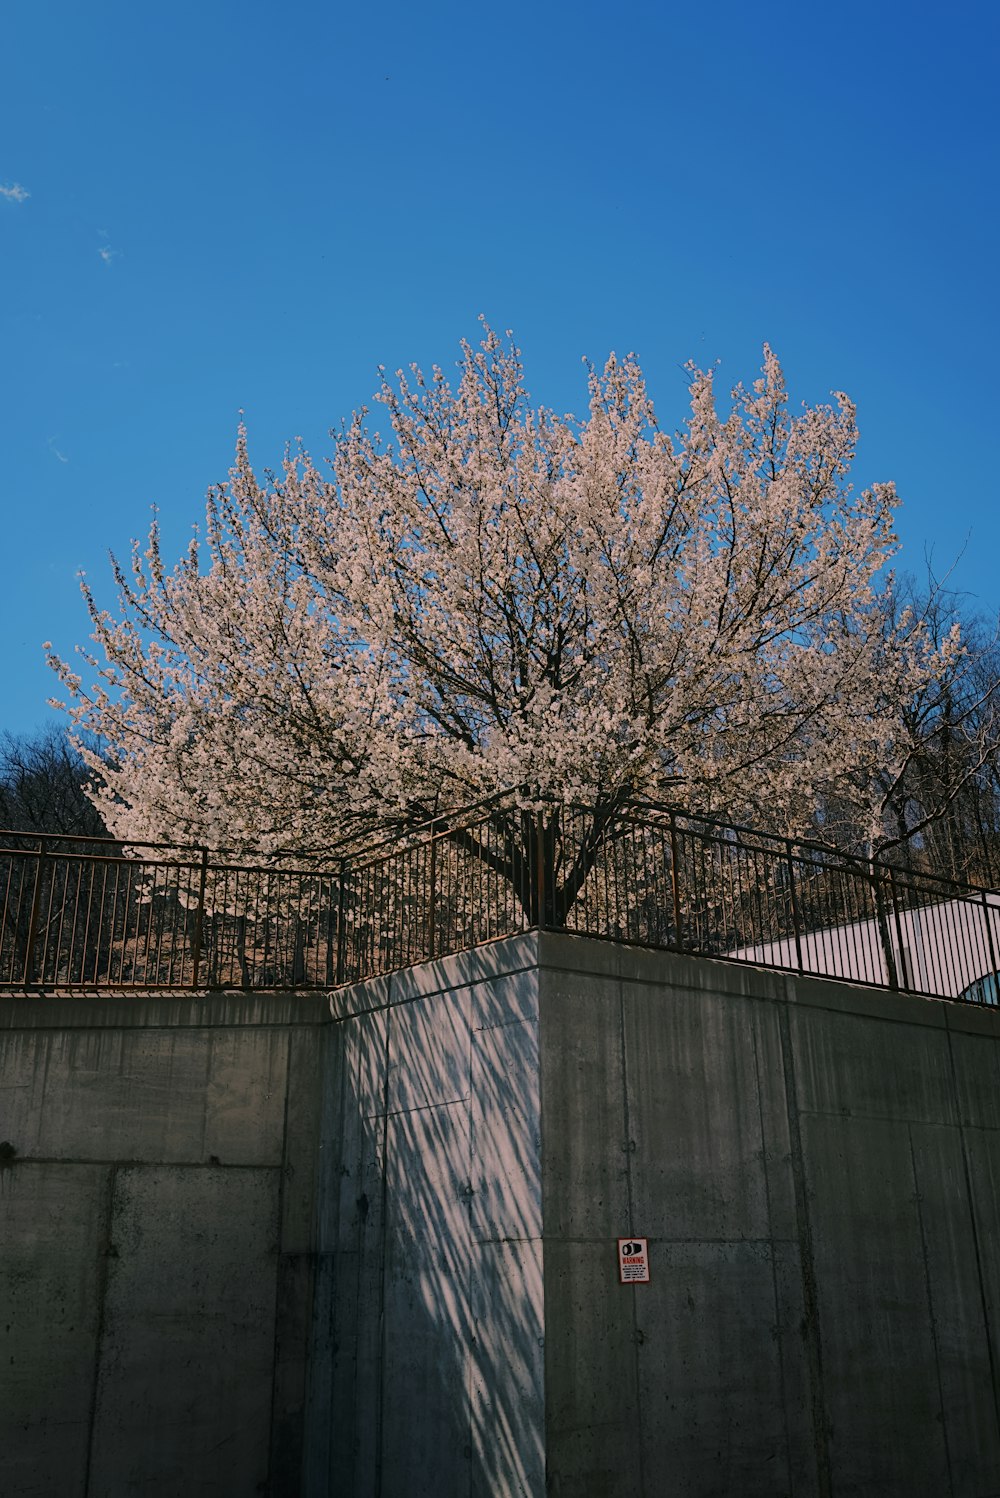 울타리 앞에 흰 꽃이 피는 나무